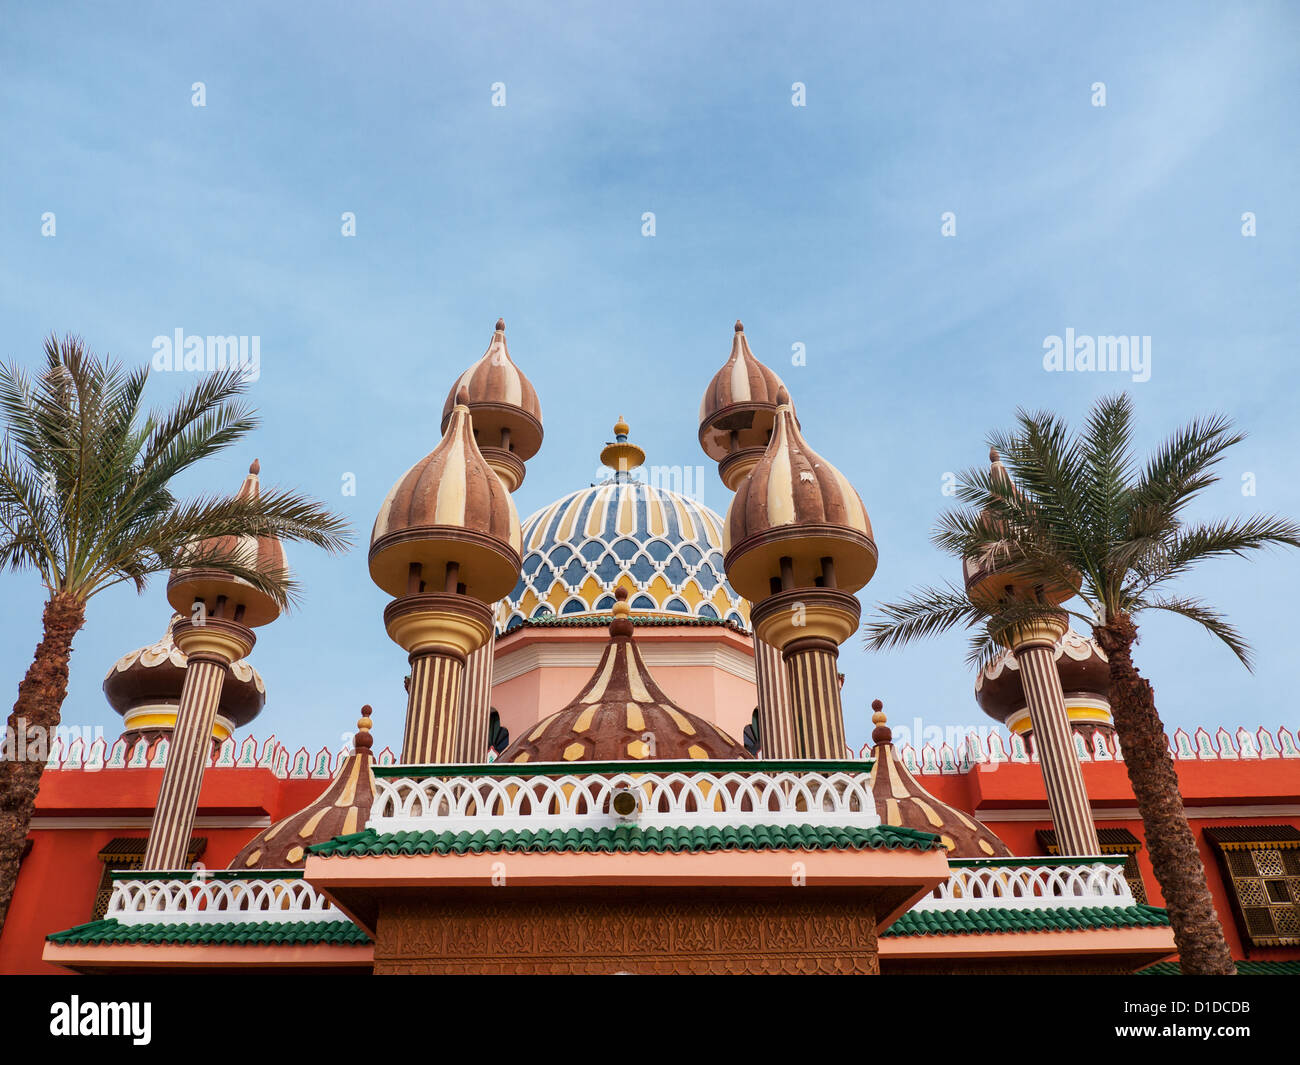 Les minarets et les dômes à l'intérieur de Fantasia, un centre de divertissement à Charm El Cheikh, Egypte Banque D'Images